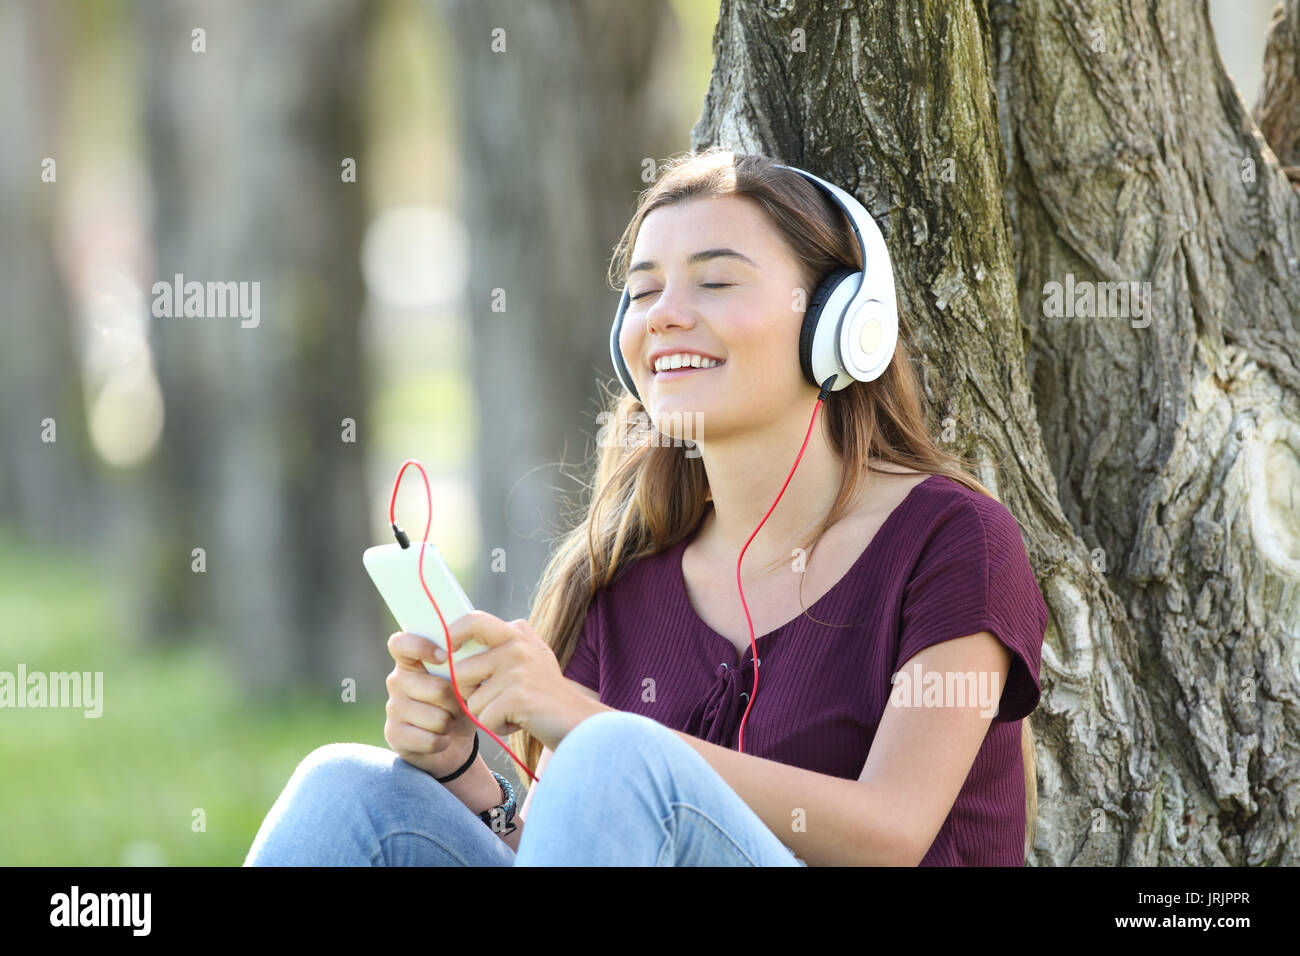 Unica sensazione teen la musica on line seduto sull'erba all'esterno in un parco Foto Stock